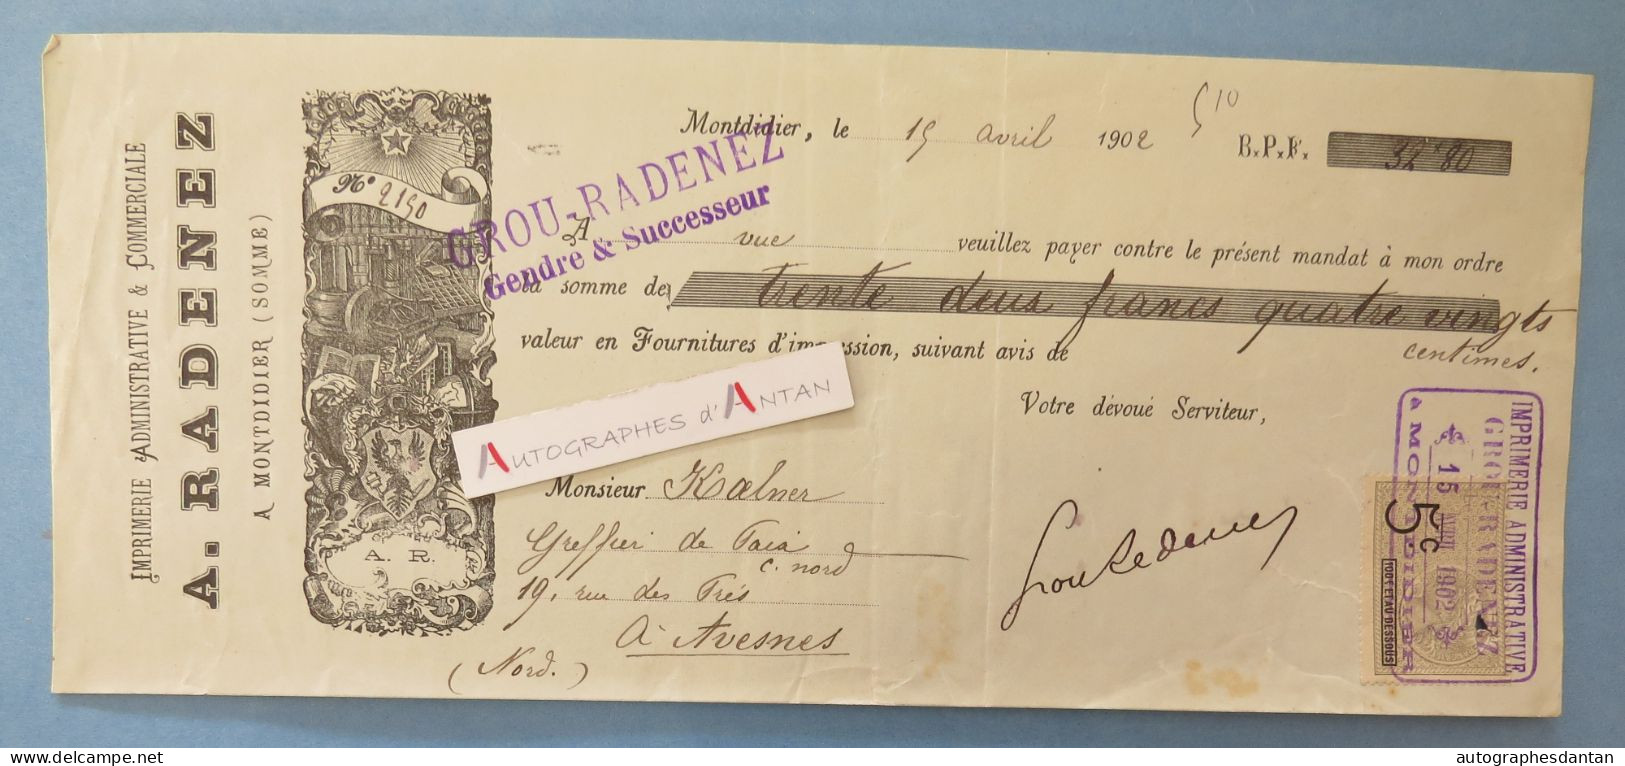 ● Montdidier 1902 - A. RADENEZ Imprimerie - Grou - Rare Mandat Illustré à M. Kalner à Avesnes - SOMME 80 Vieux Papier - Bills Of Exchange